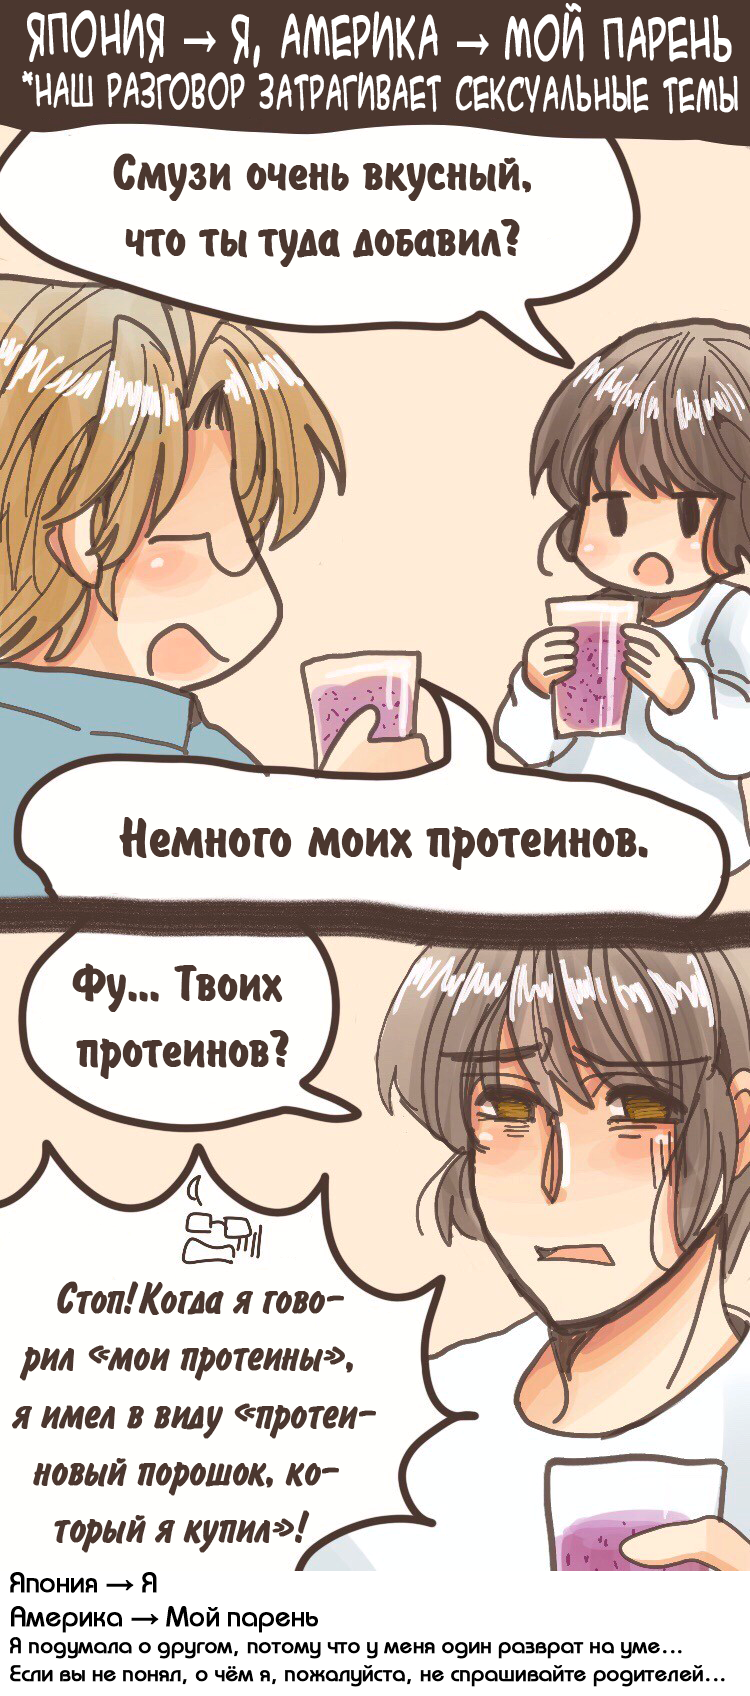 Эротические комиксы на русском